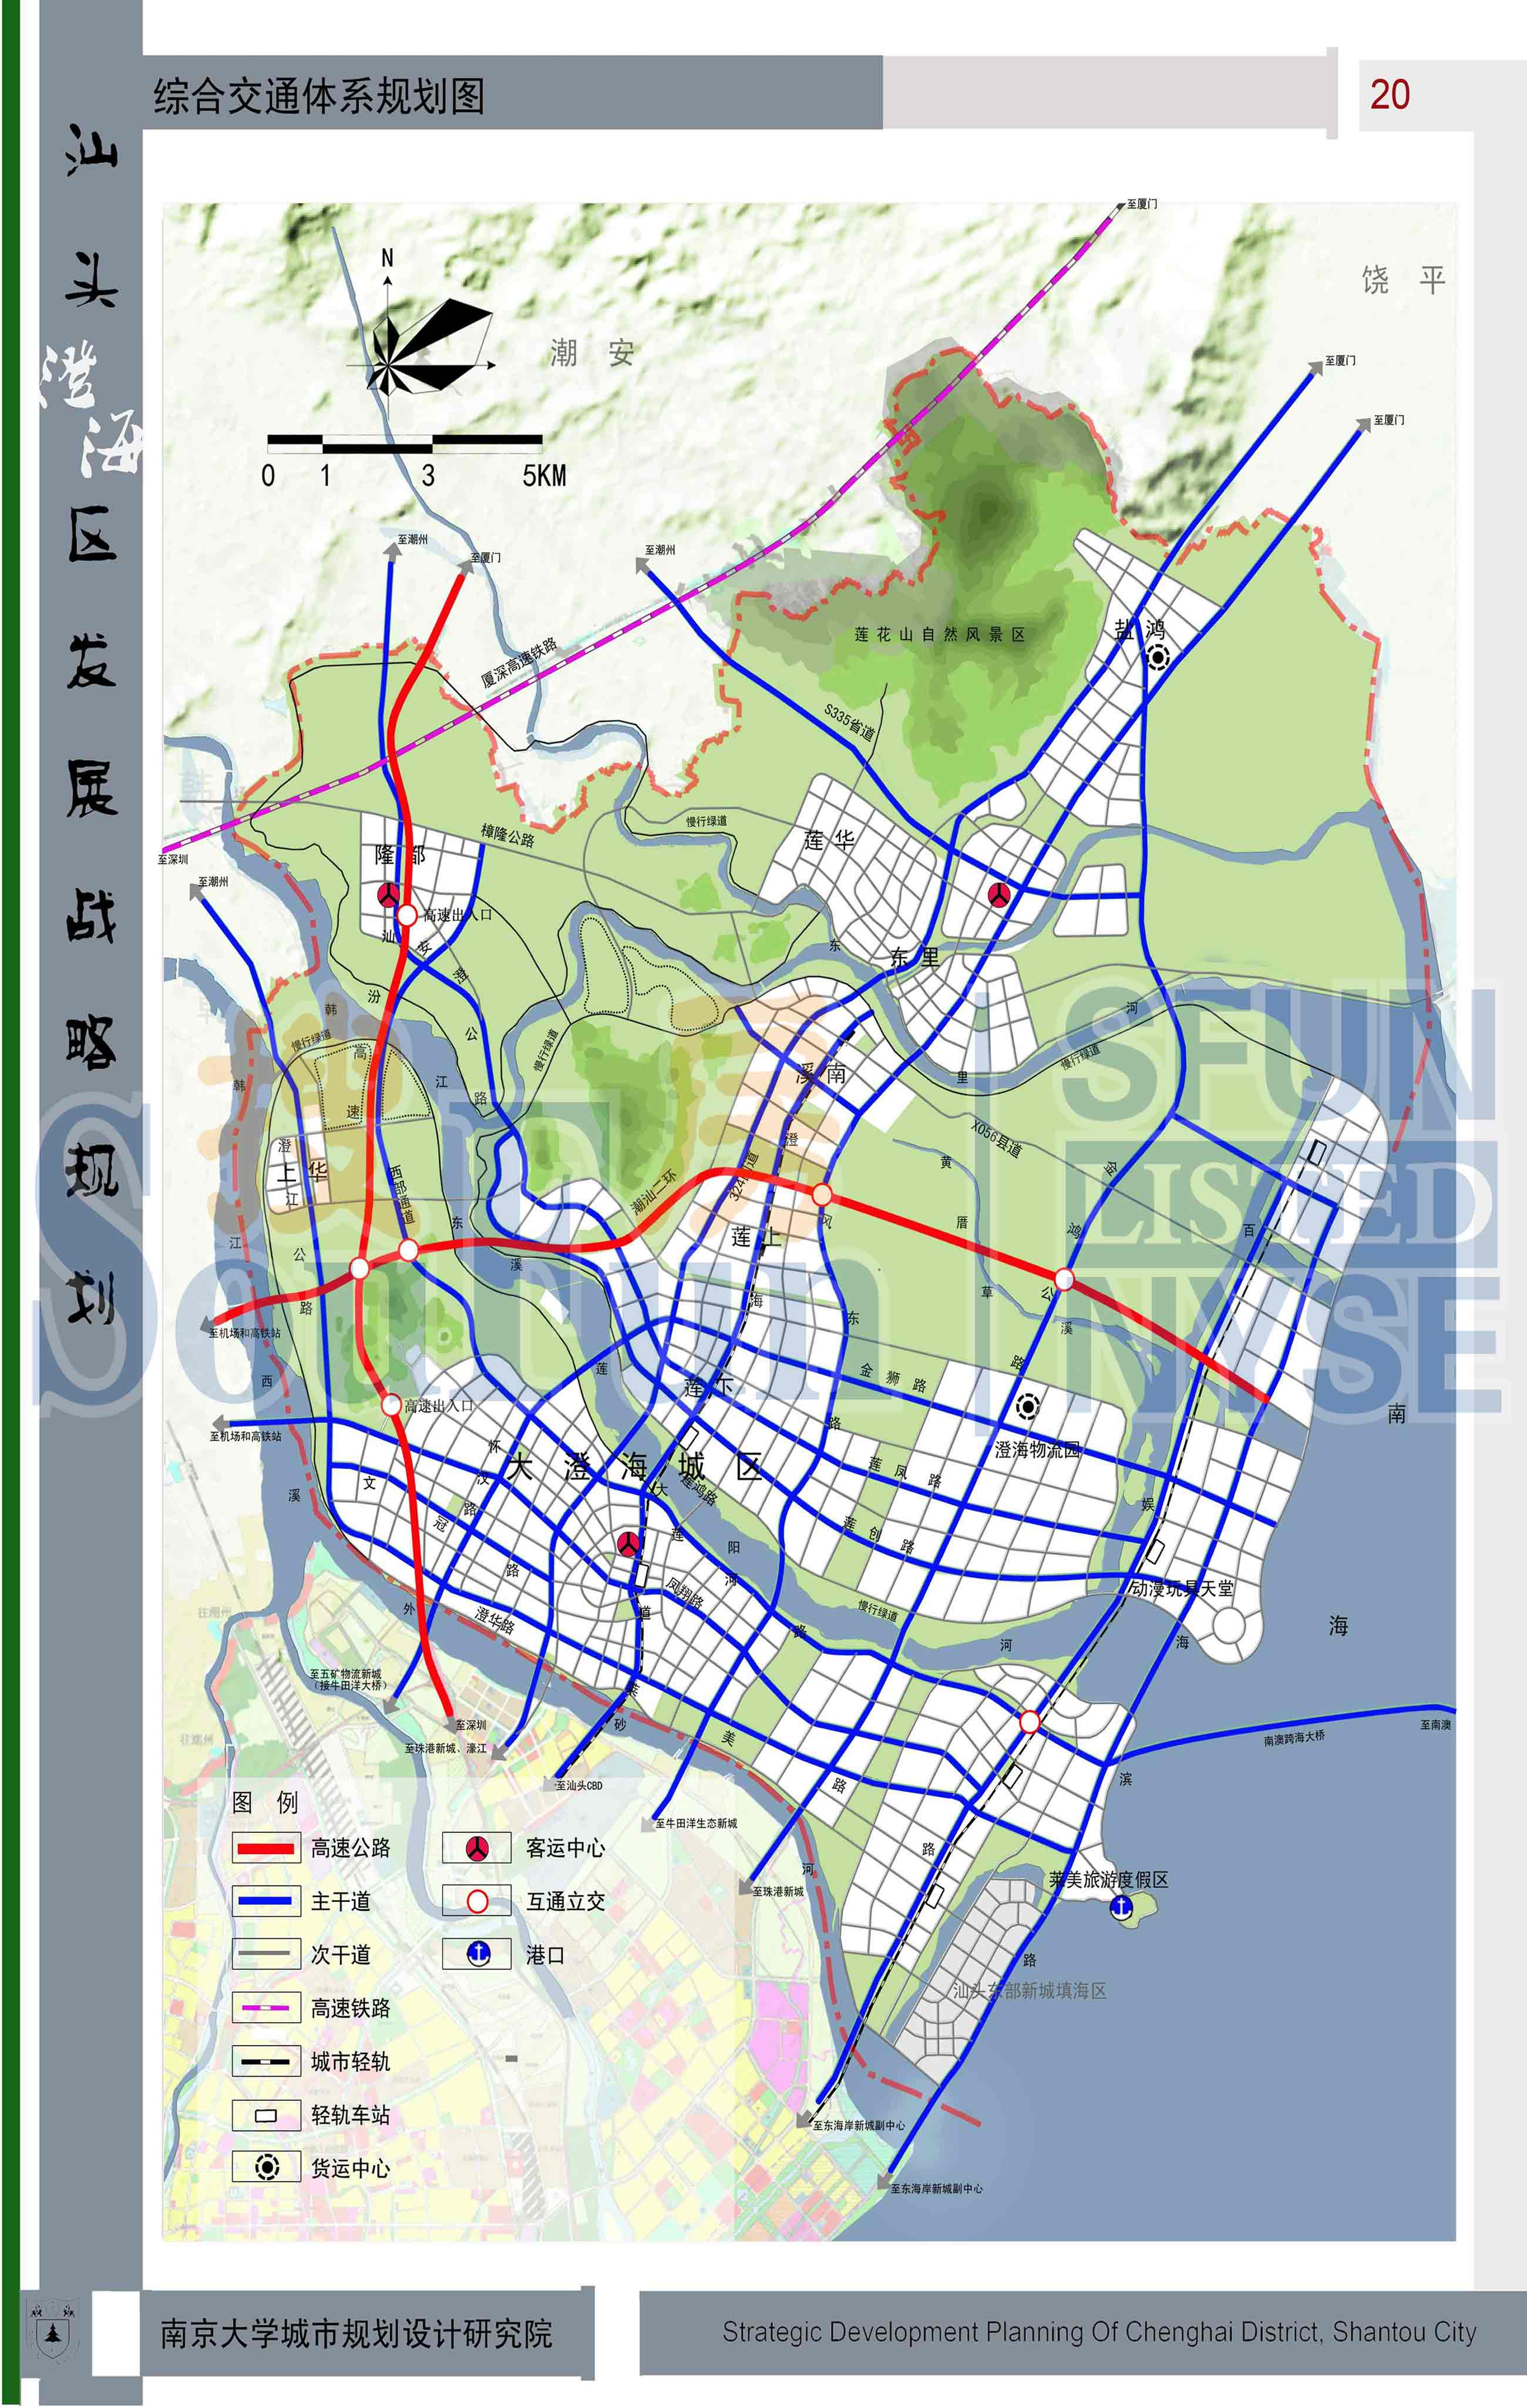 《汕头市澄海区战略发展镇规划(2010-2030)》初步方案公示意见征集